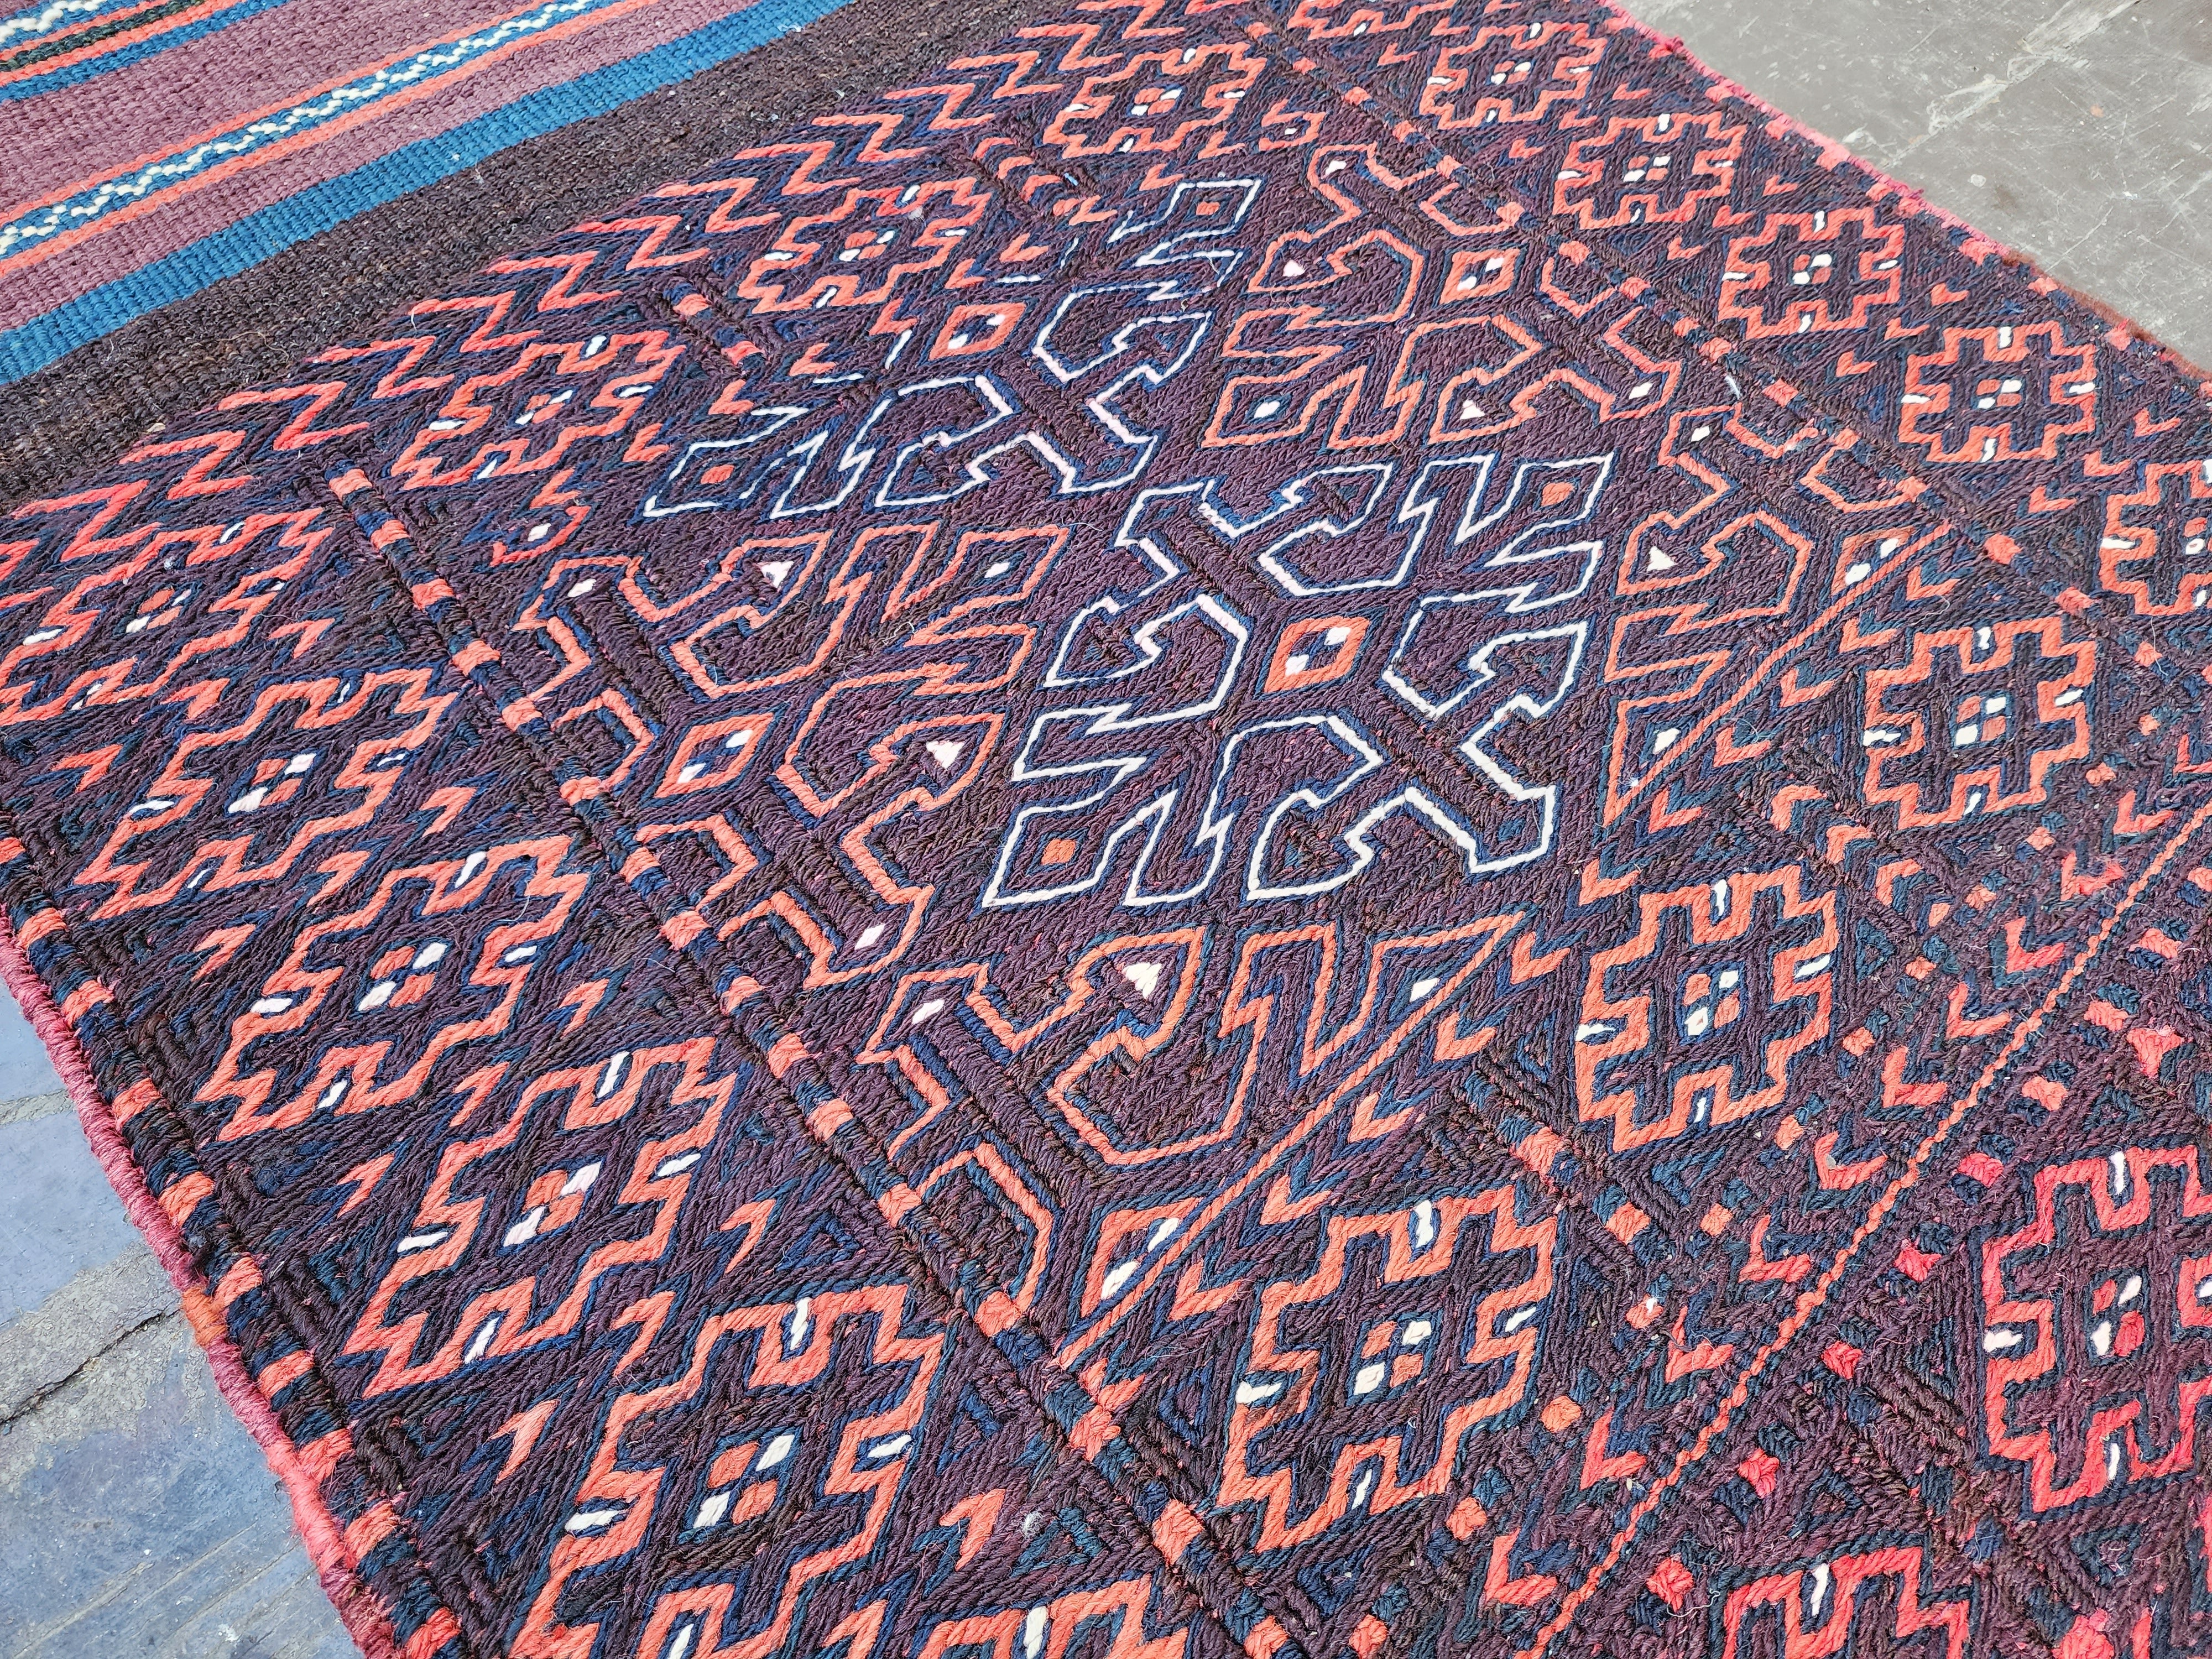 Persian Tribal Kilim Hallway Rug 5'7''x2'2'' Natural Wool Boho Rustic Runner Rug